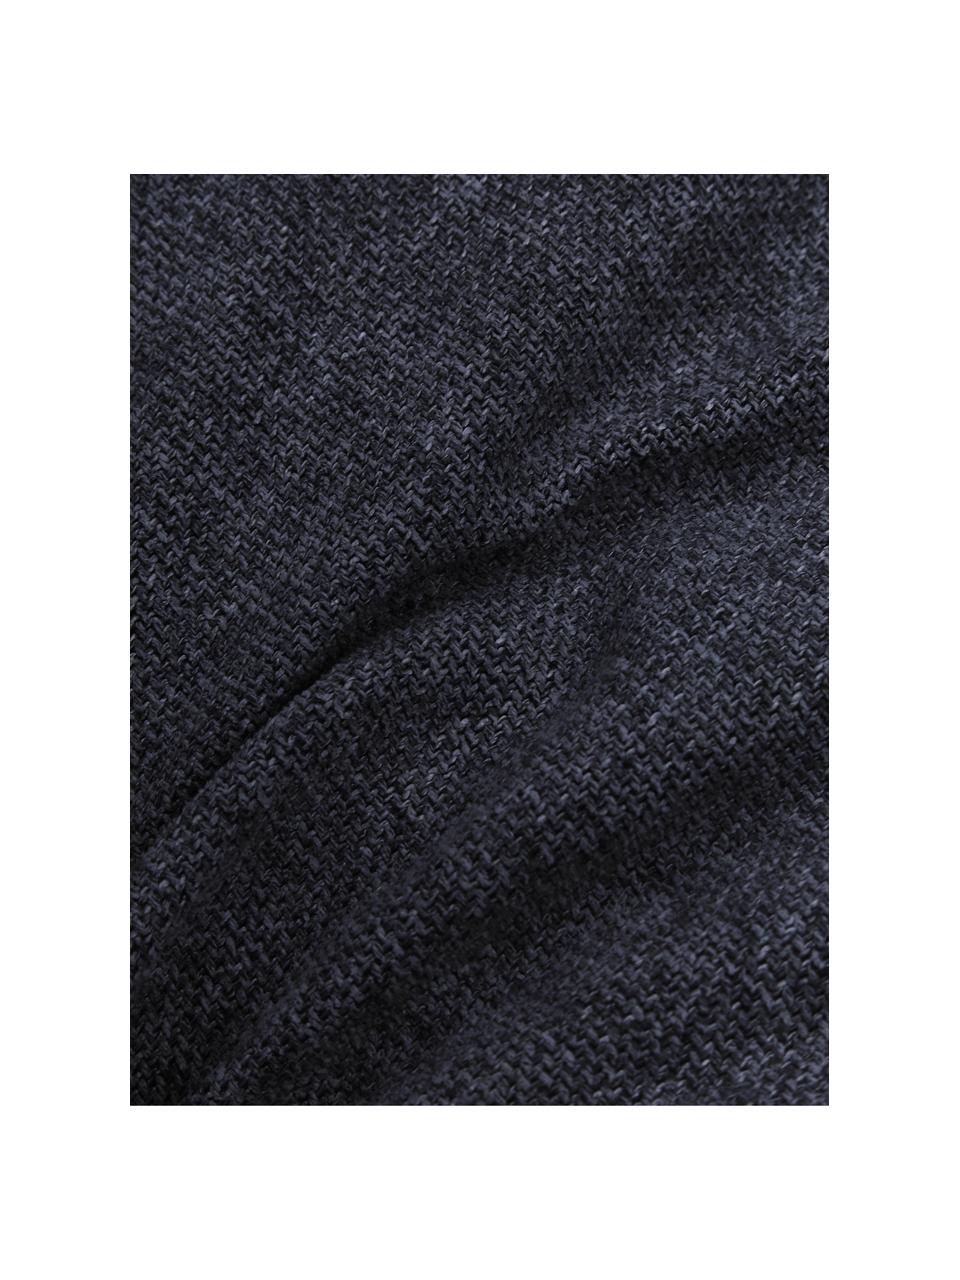 Bankkussen Lennon in donkerblauw, Geweven stof blauw, B 60 x L 60 cm